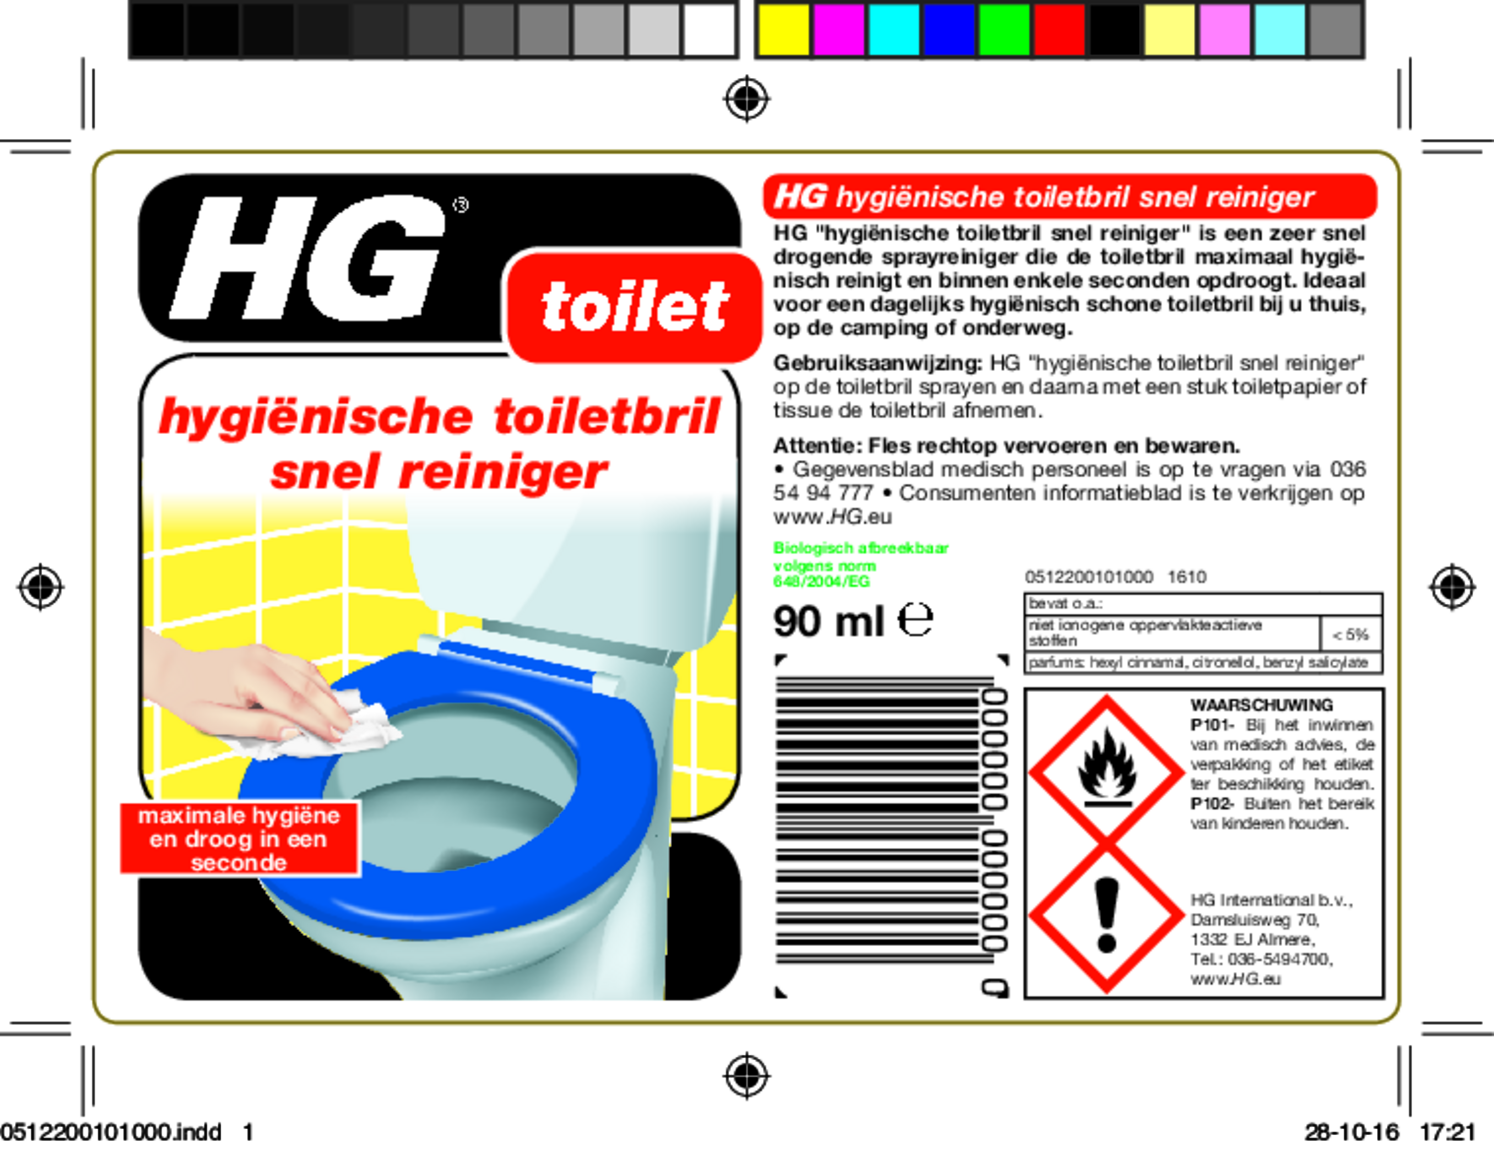 Hygiënische Toiletbril Reiniger afbeelding van document #1, etiket